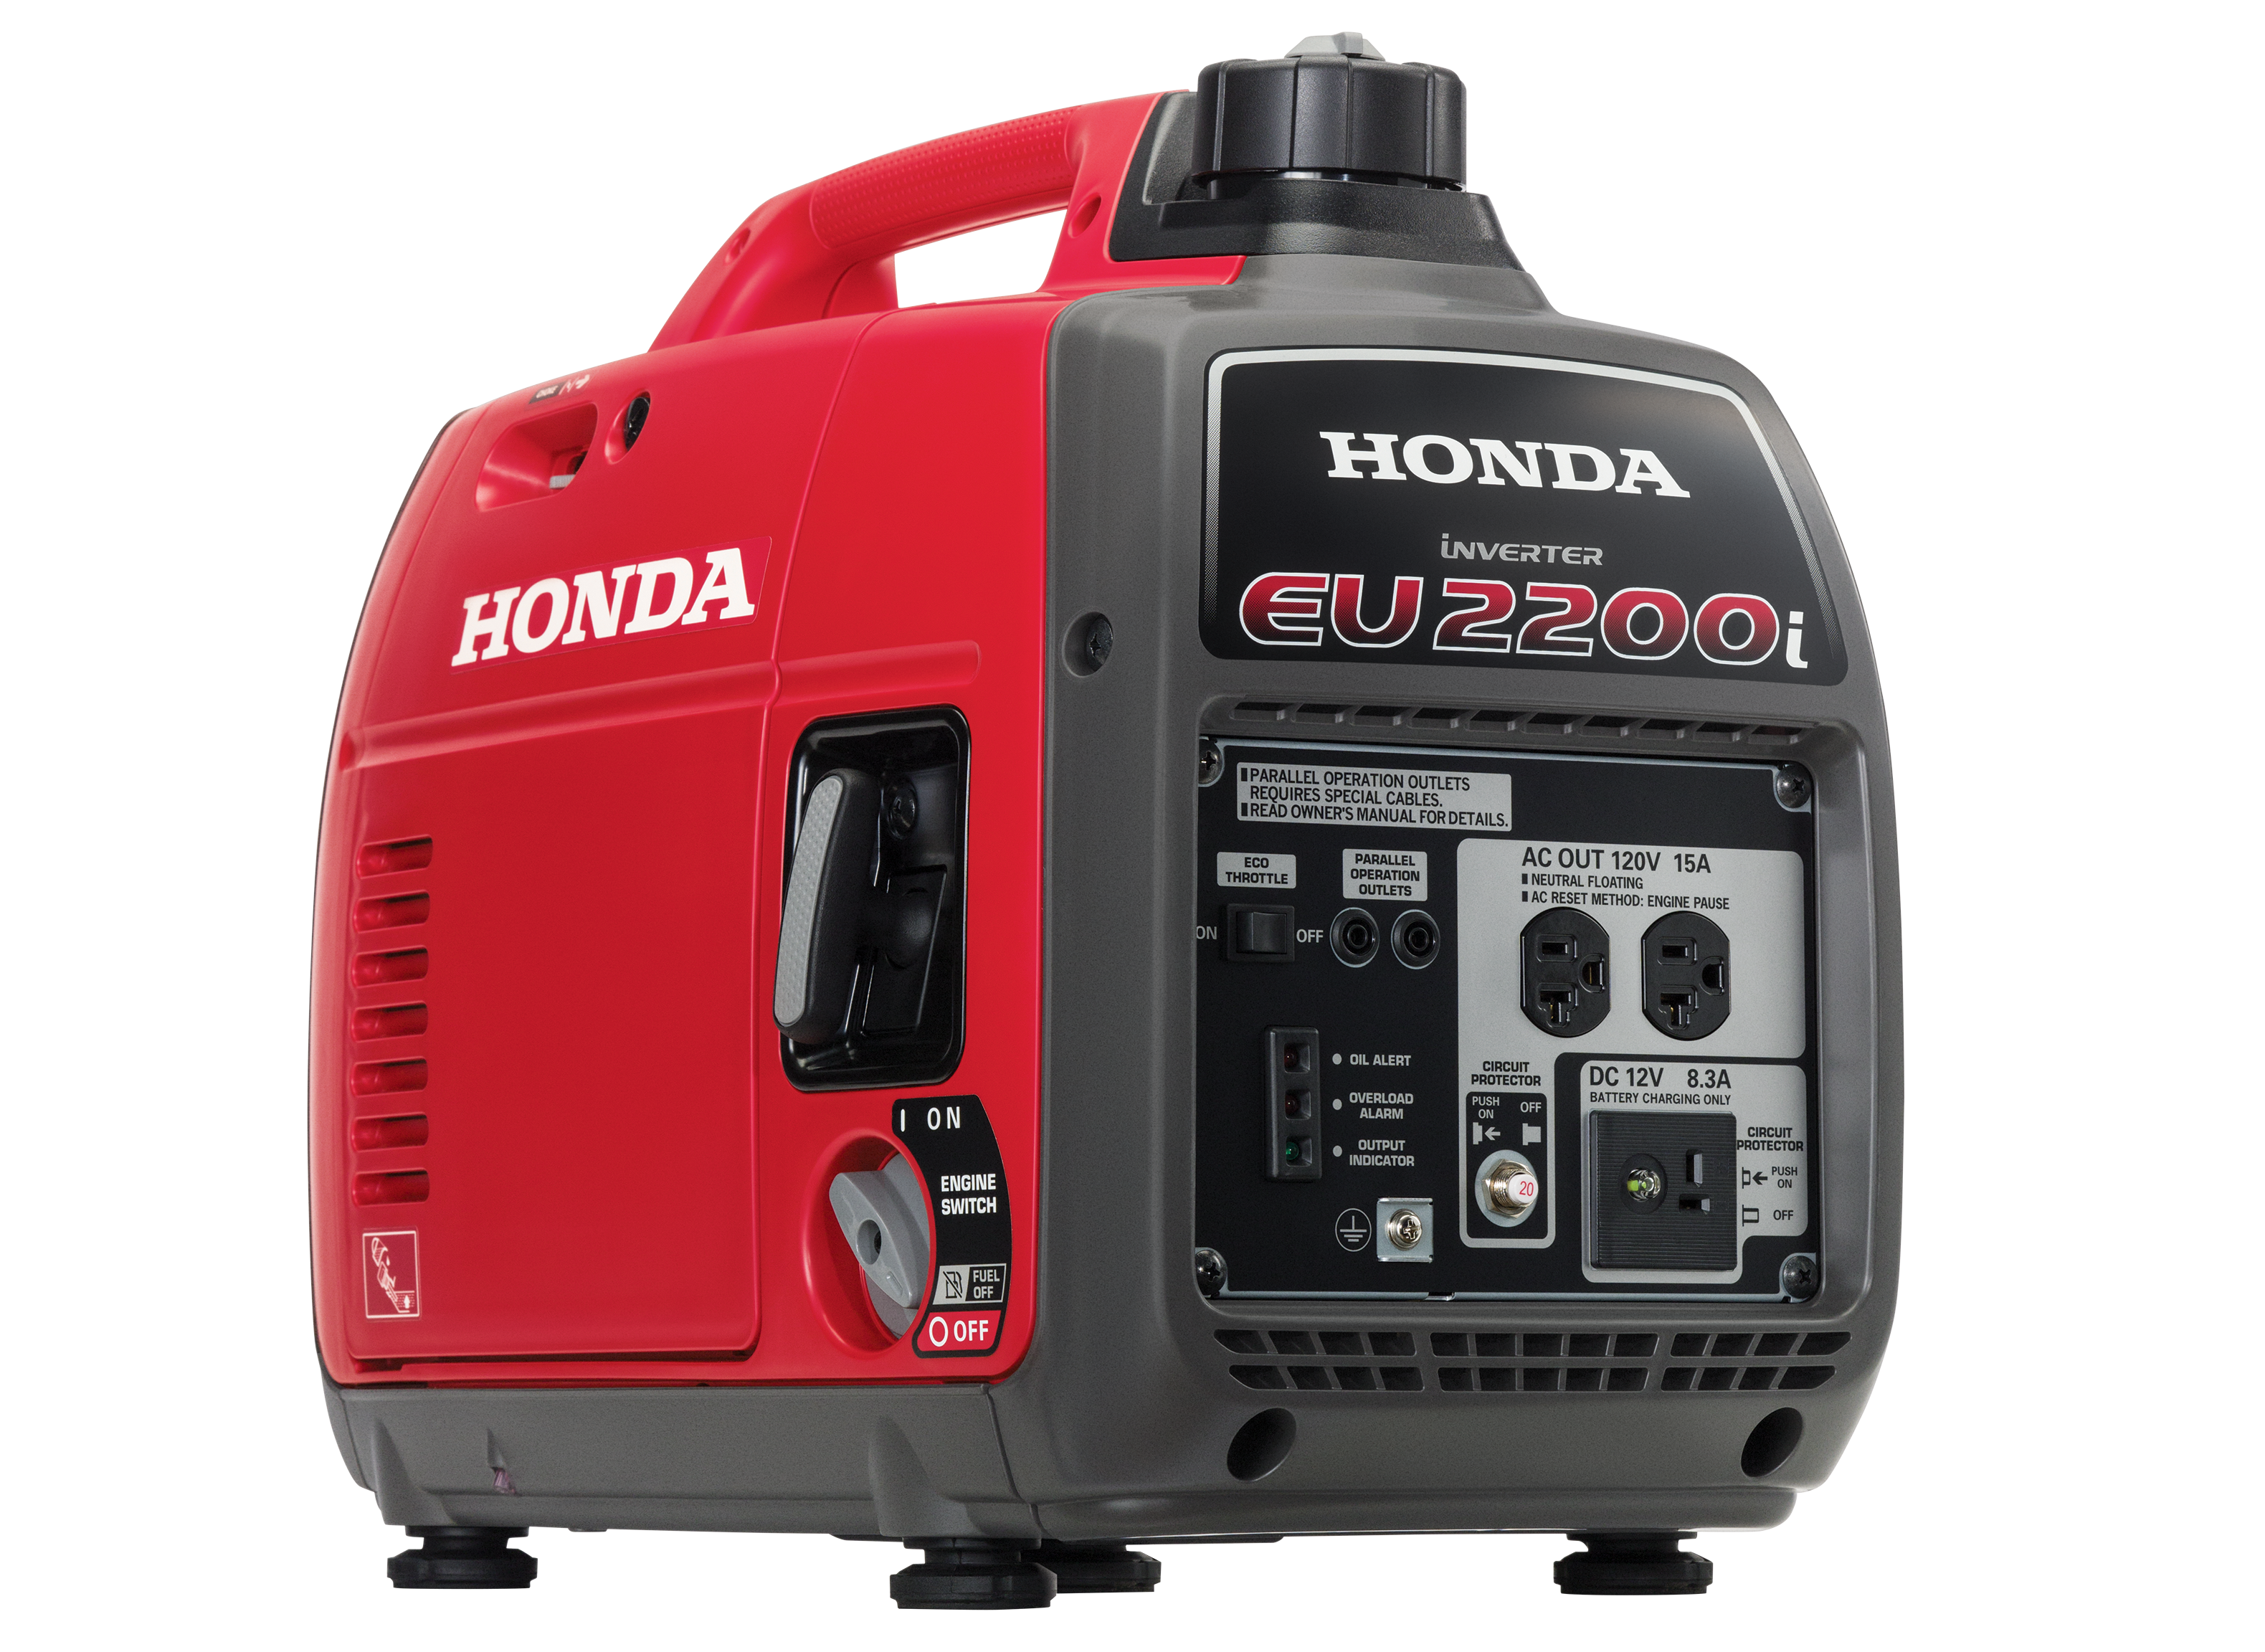 1. Honda Eu2200I